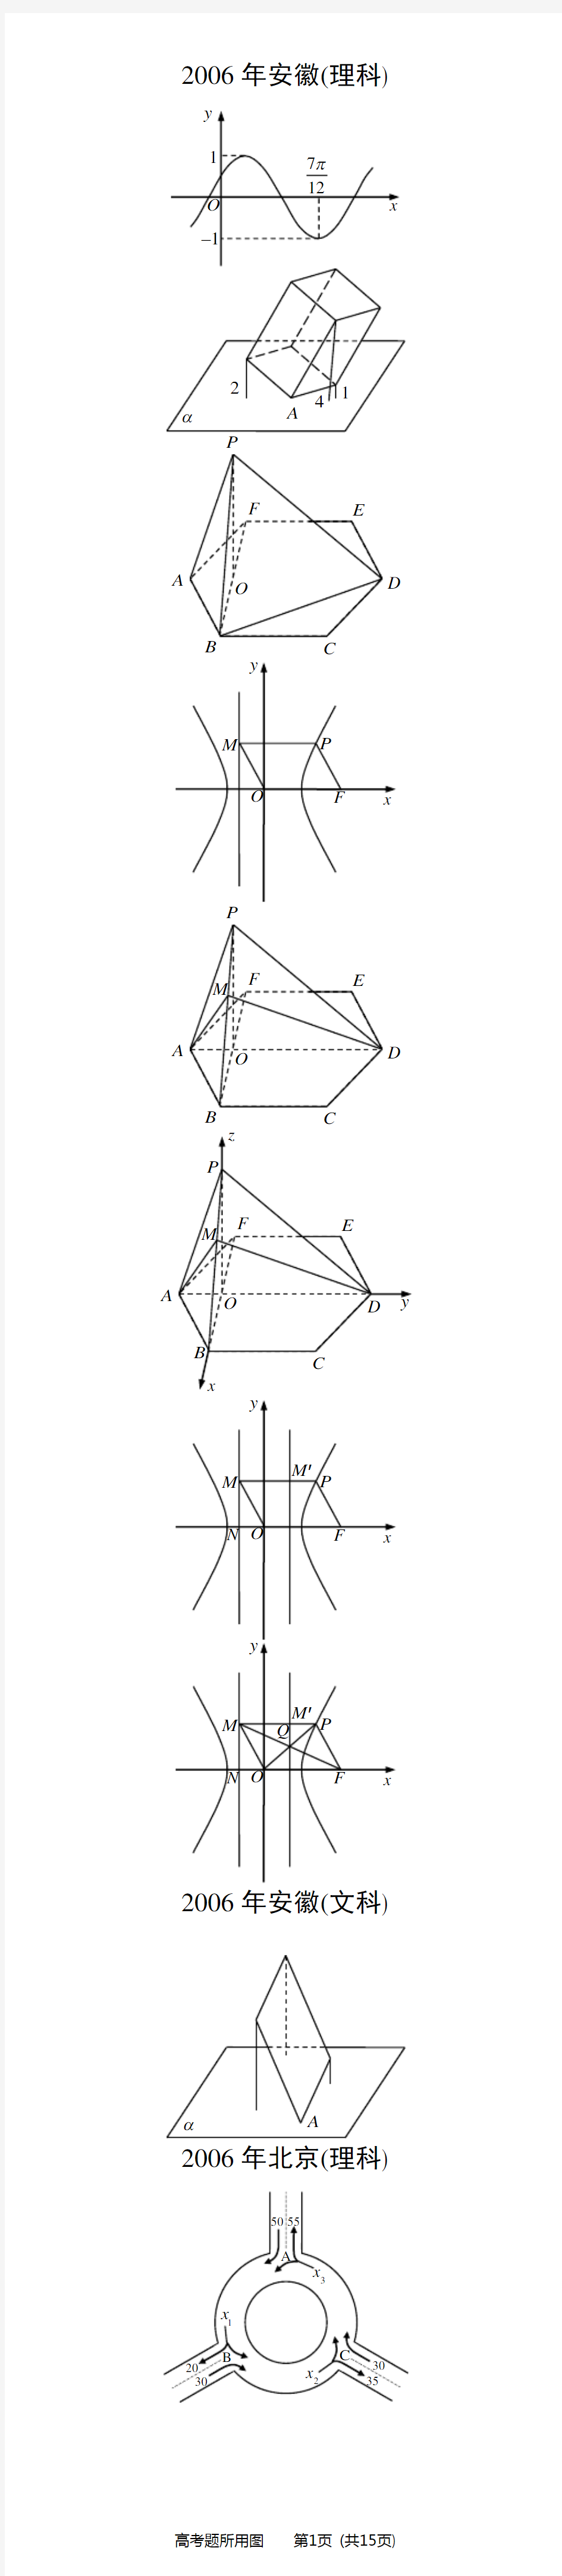 数学几何图形